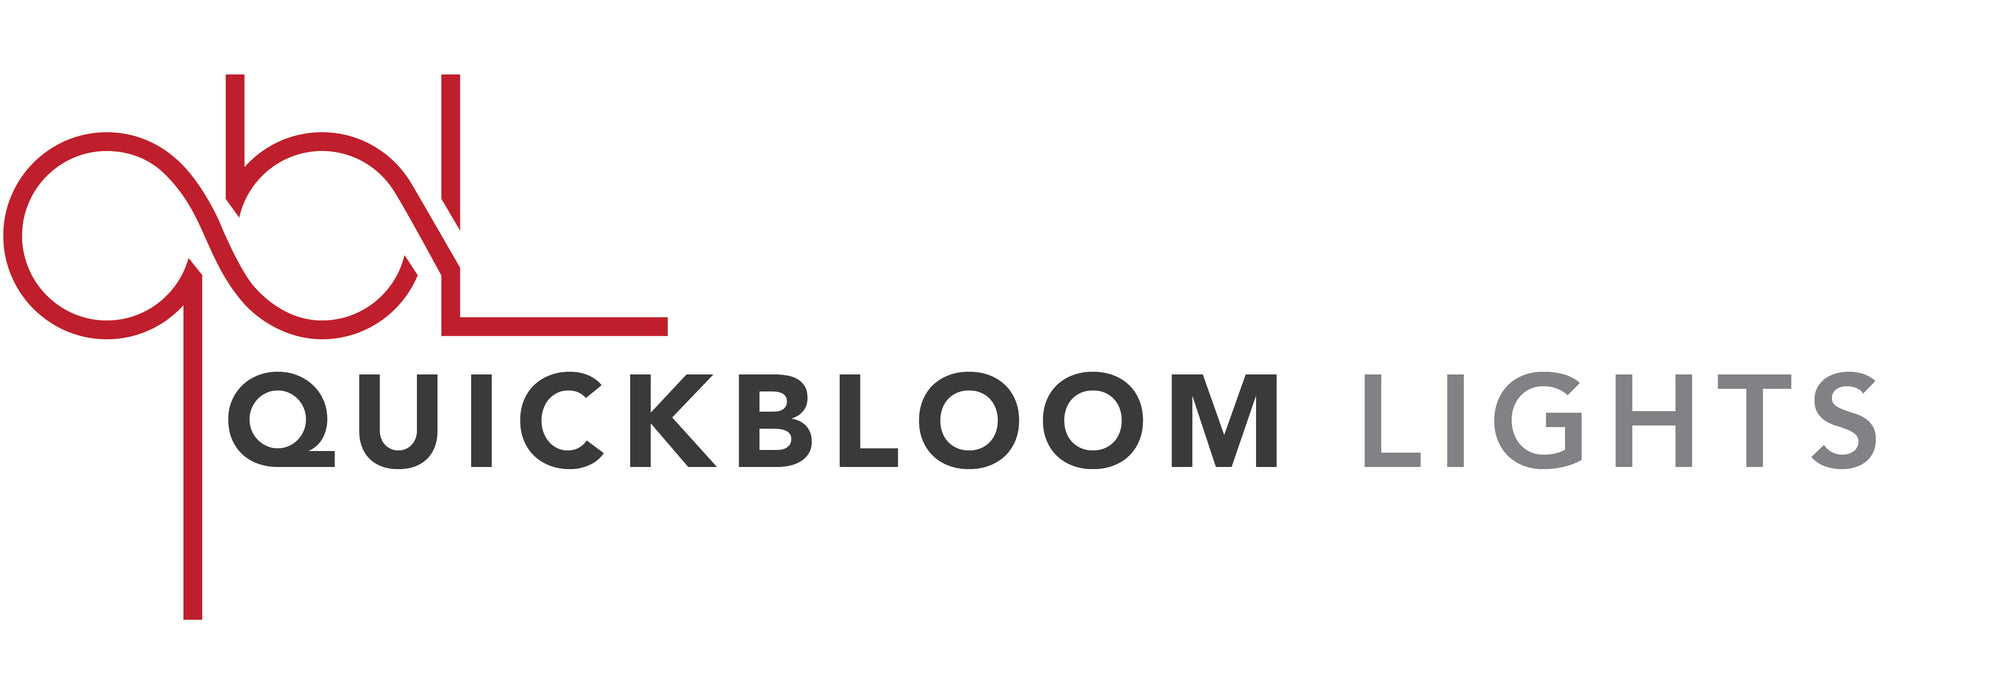 Quick Bloom Lights Mobile Logo